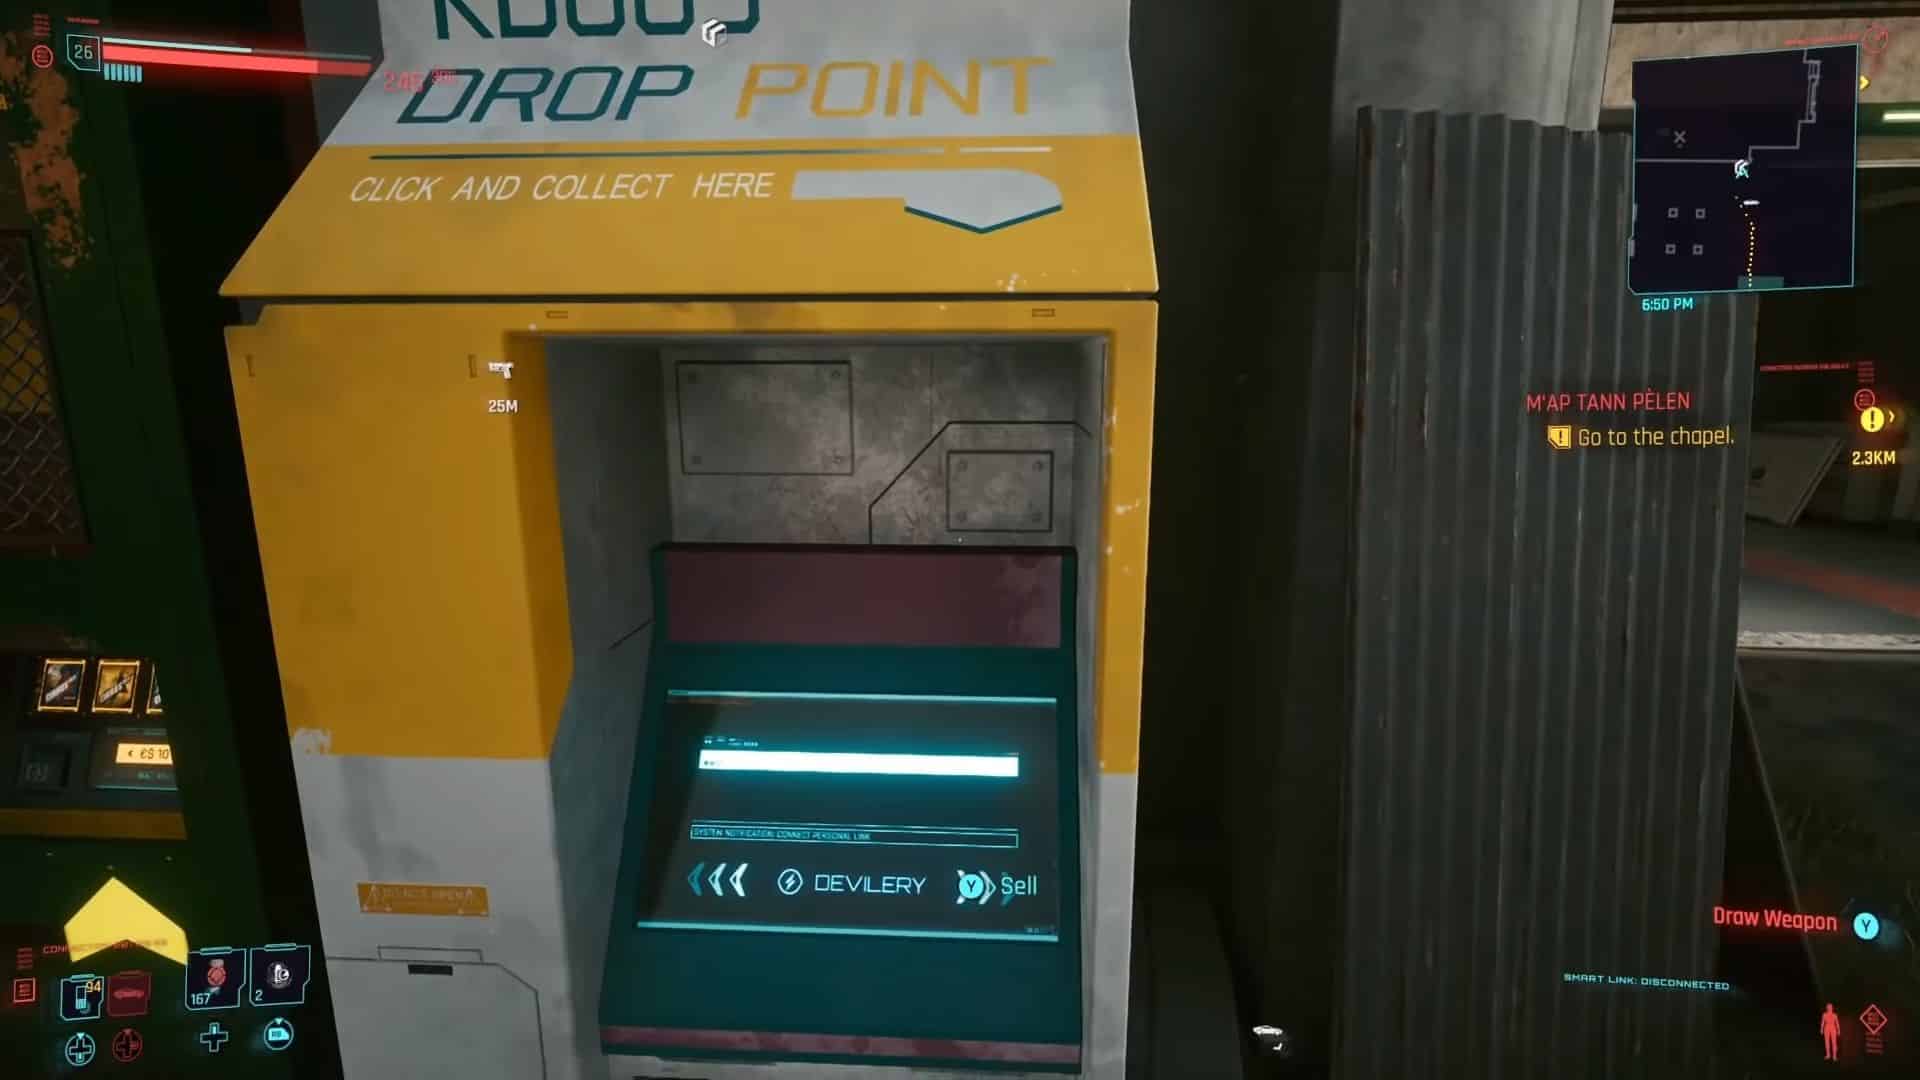 drop point in cyberpunk 2077 money exploit